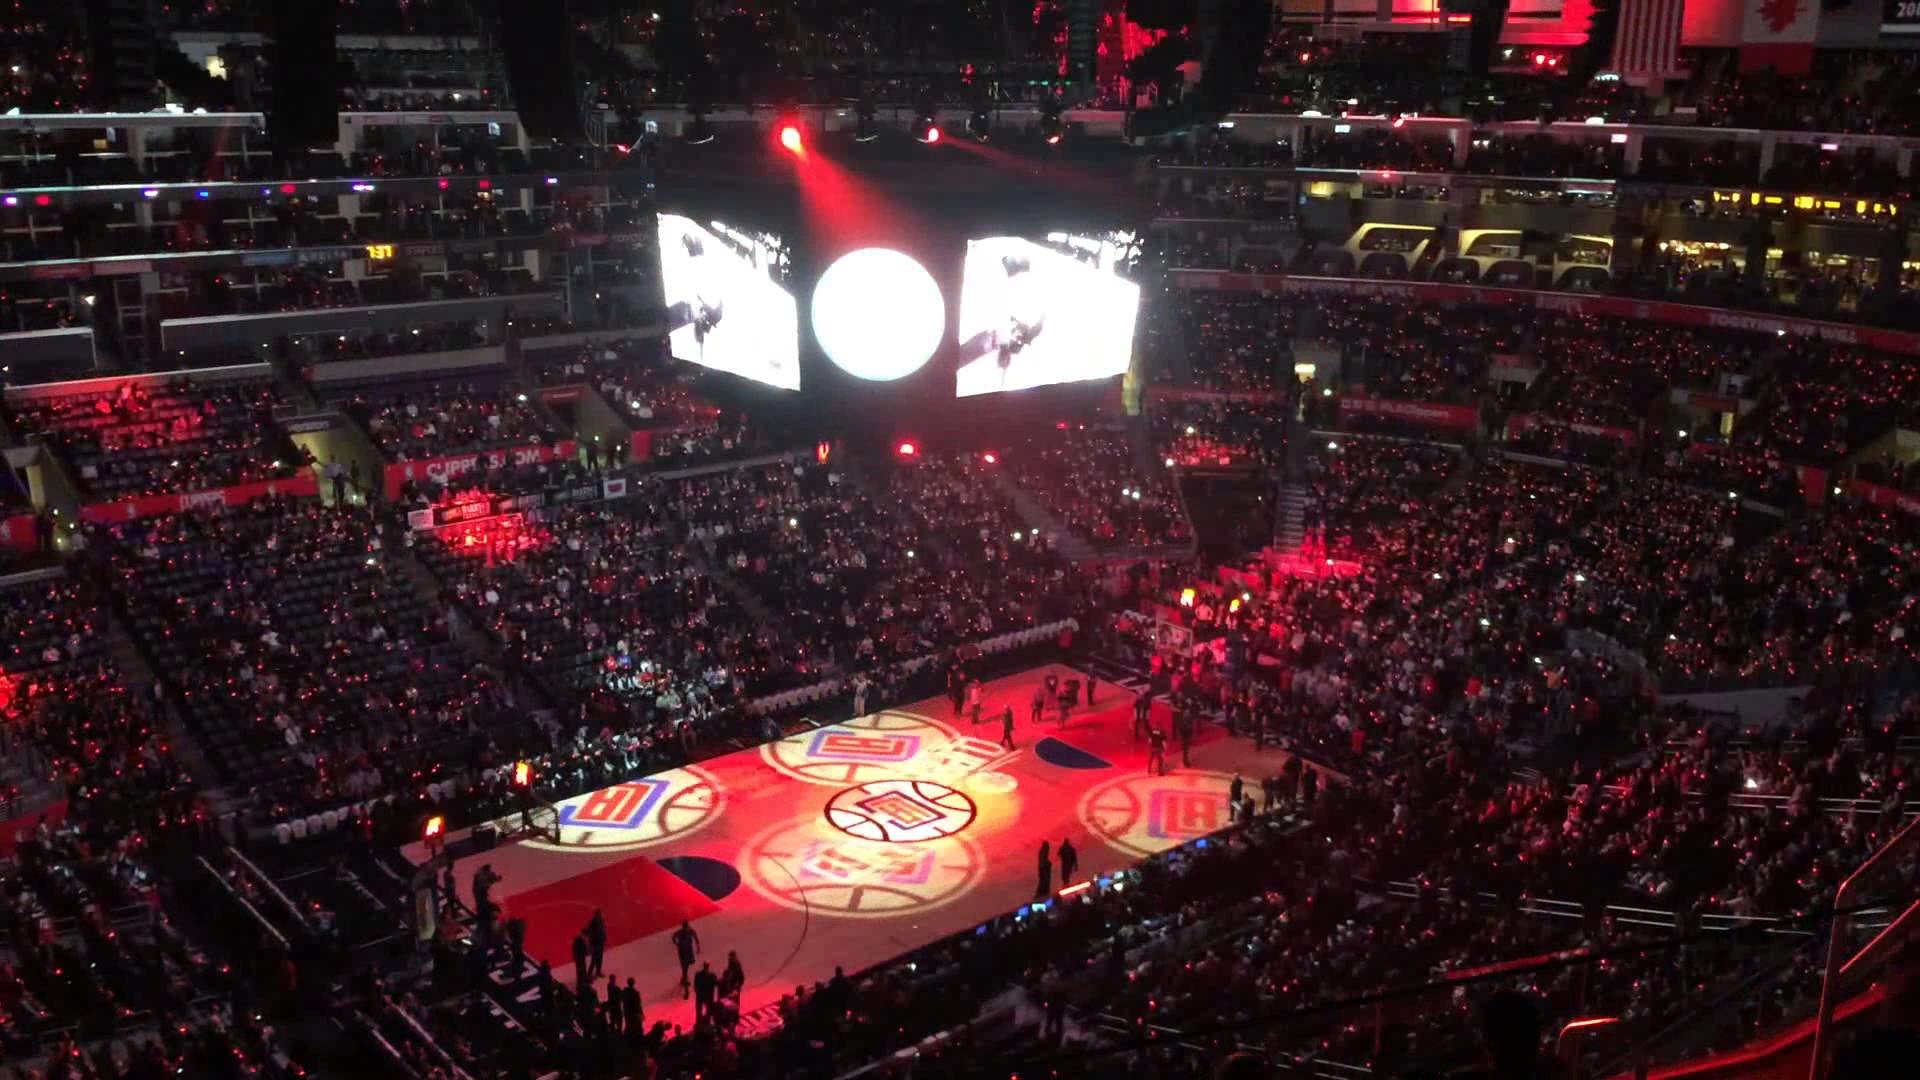 La Clippers Team Announcement Light Show Staples Center Los Angeles 1920x1080